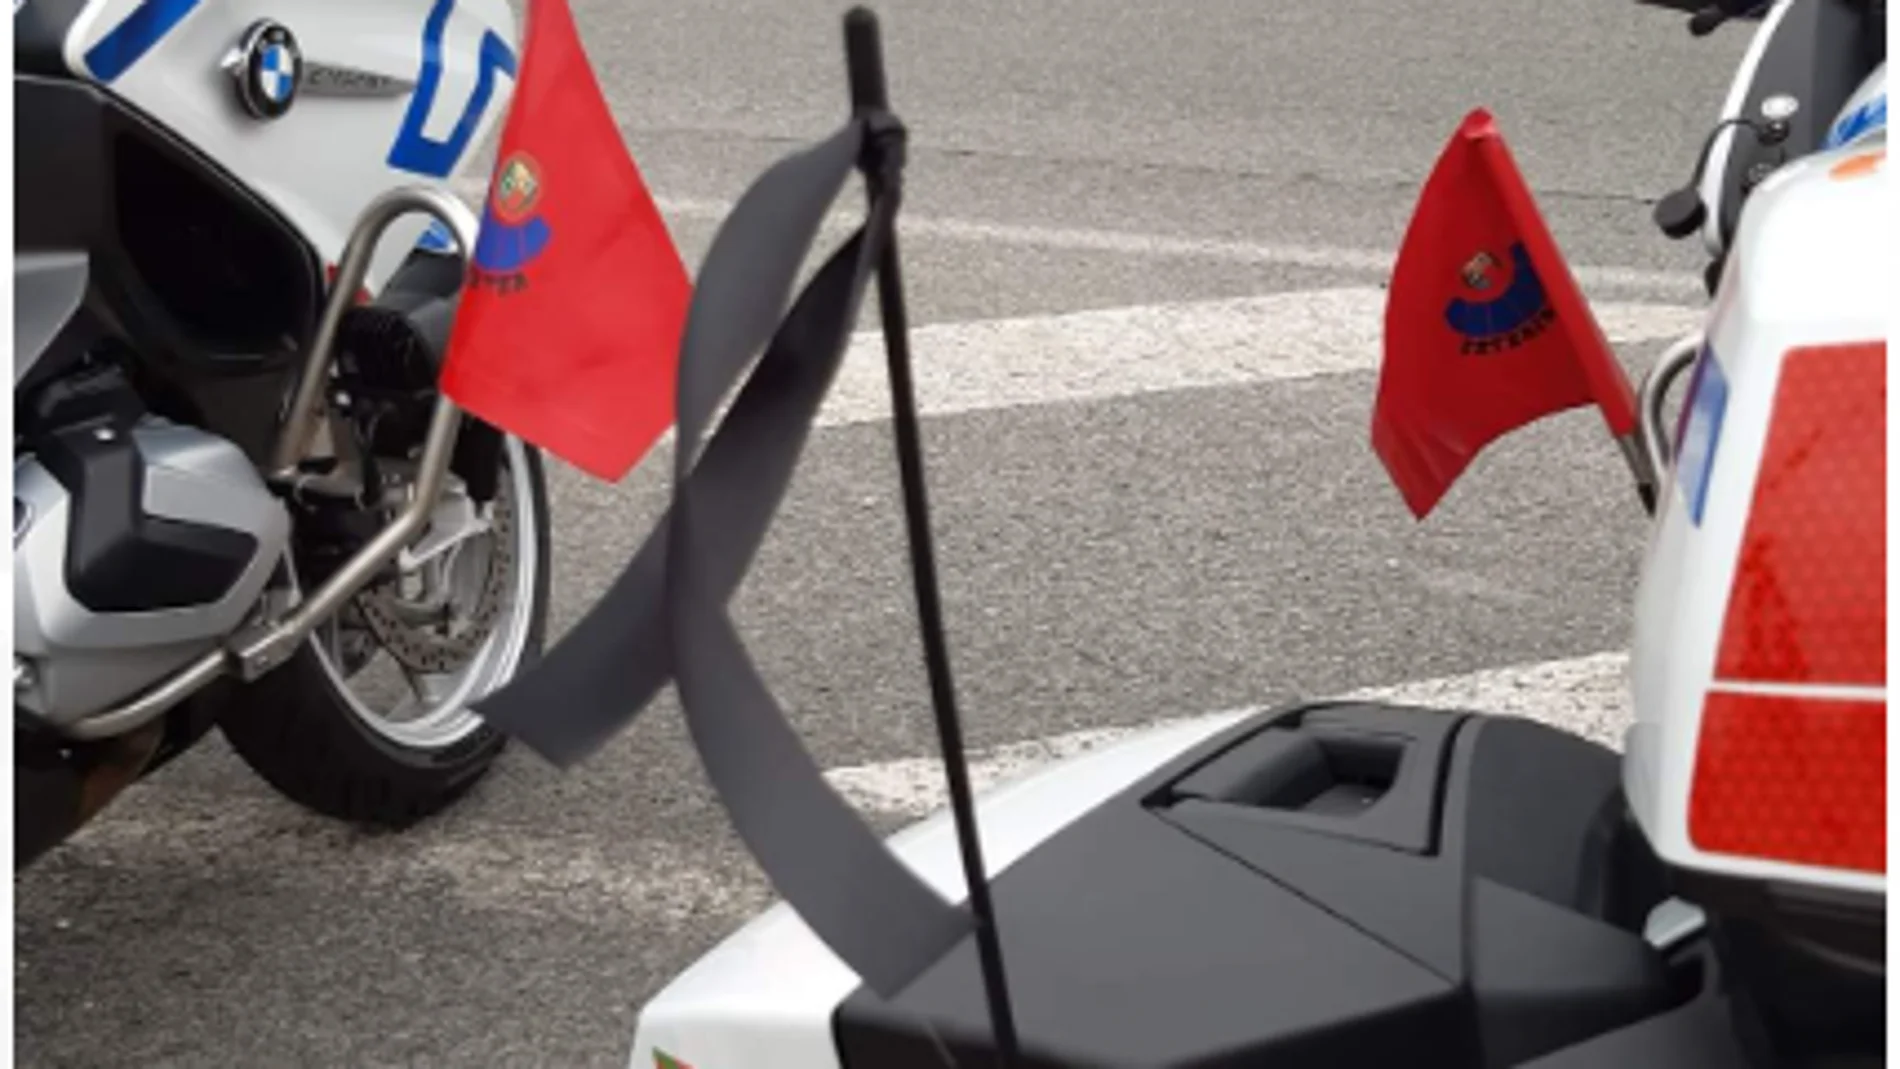 Crespón negro en las motos de la Ertzaintza por el guardia civil muerto